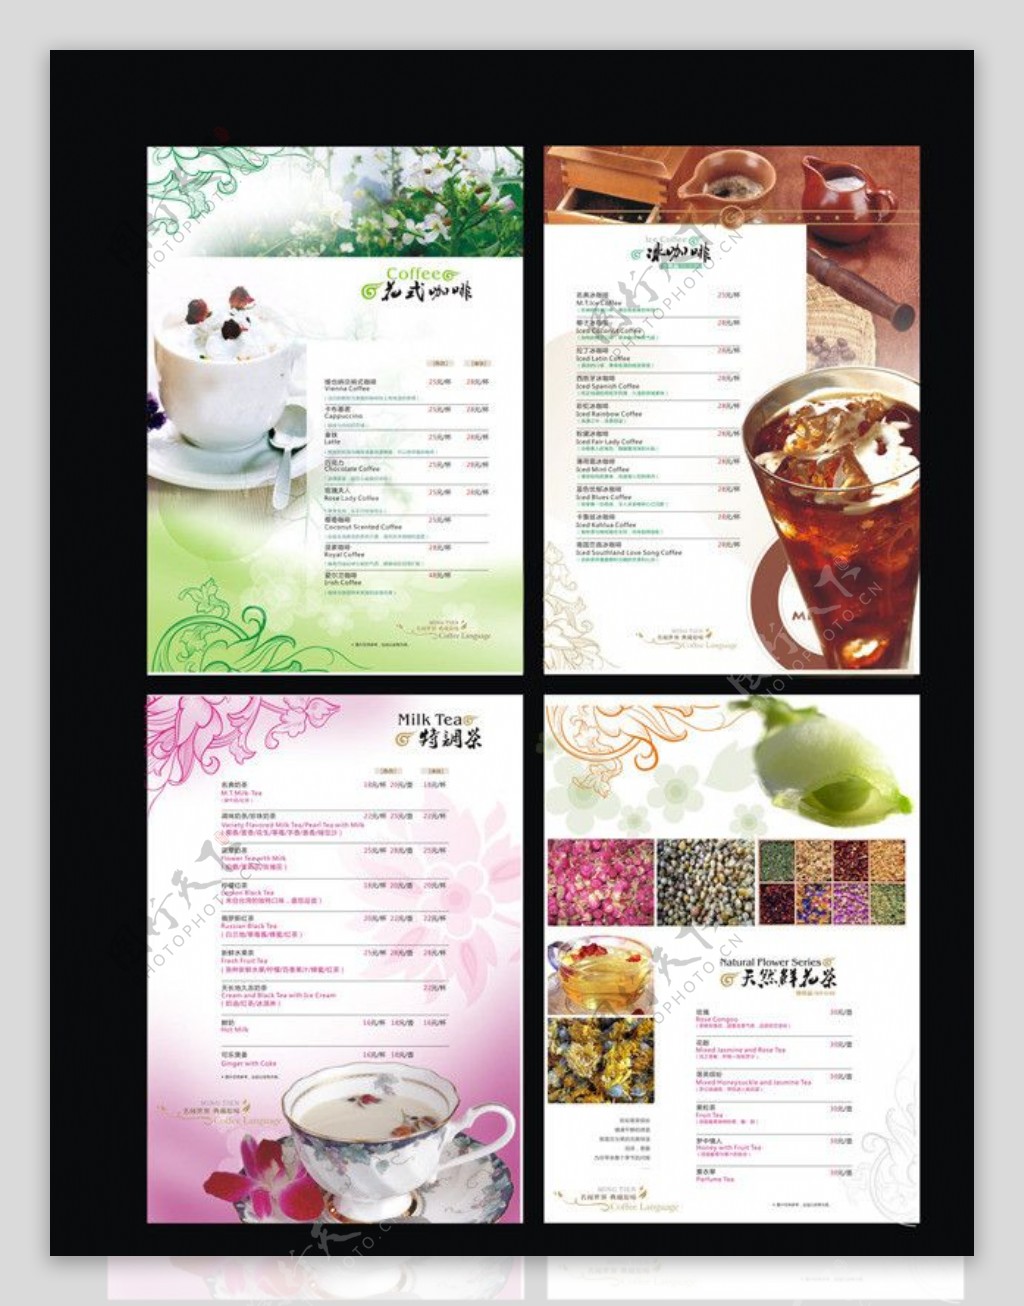 咖啡厅菜谱设计图片